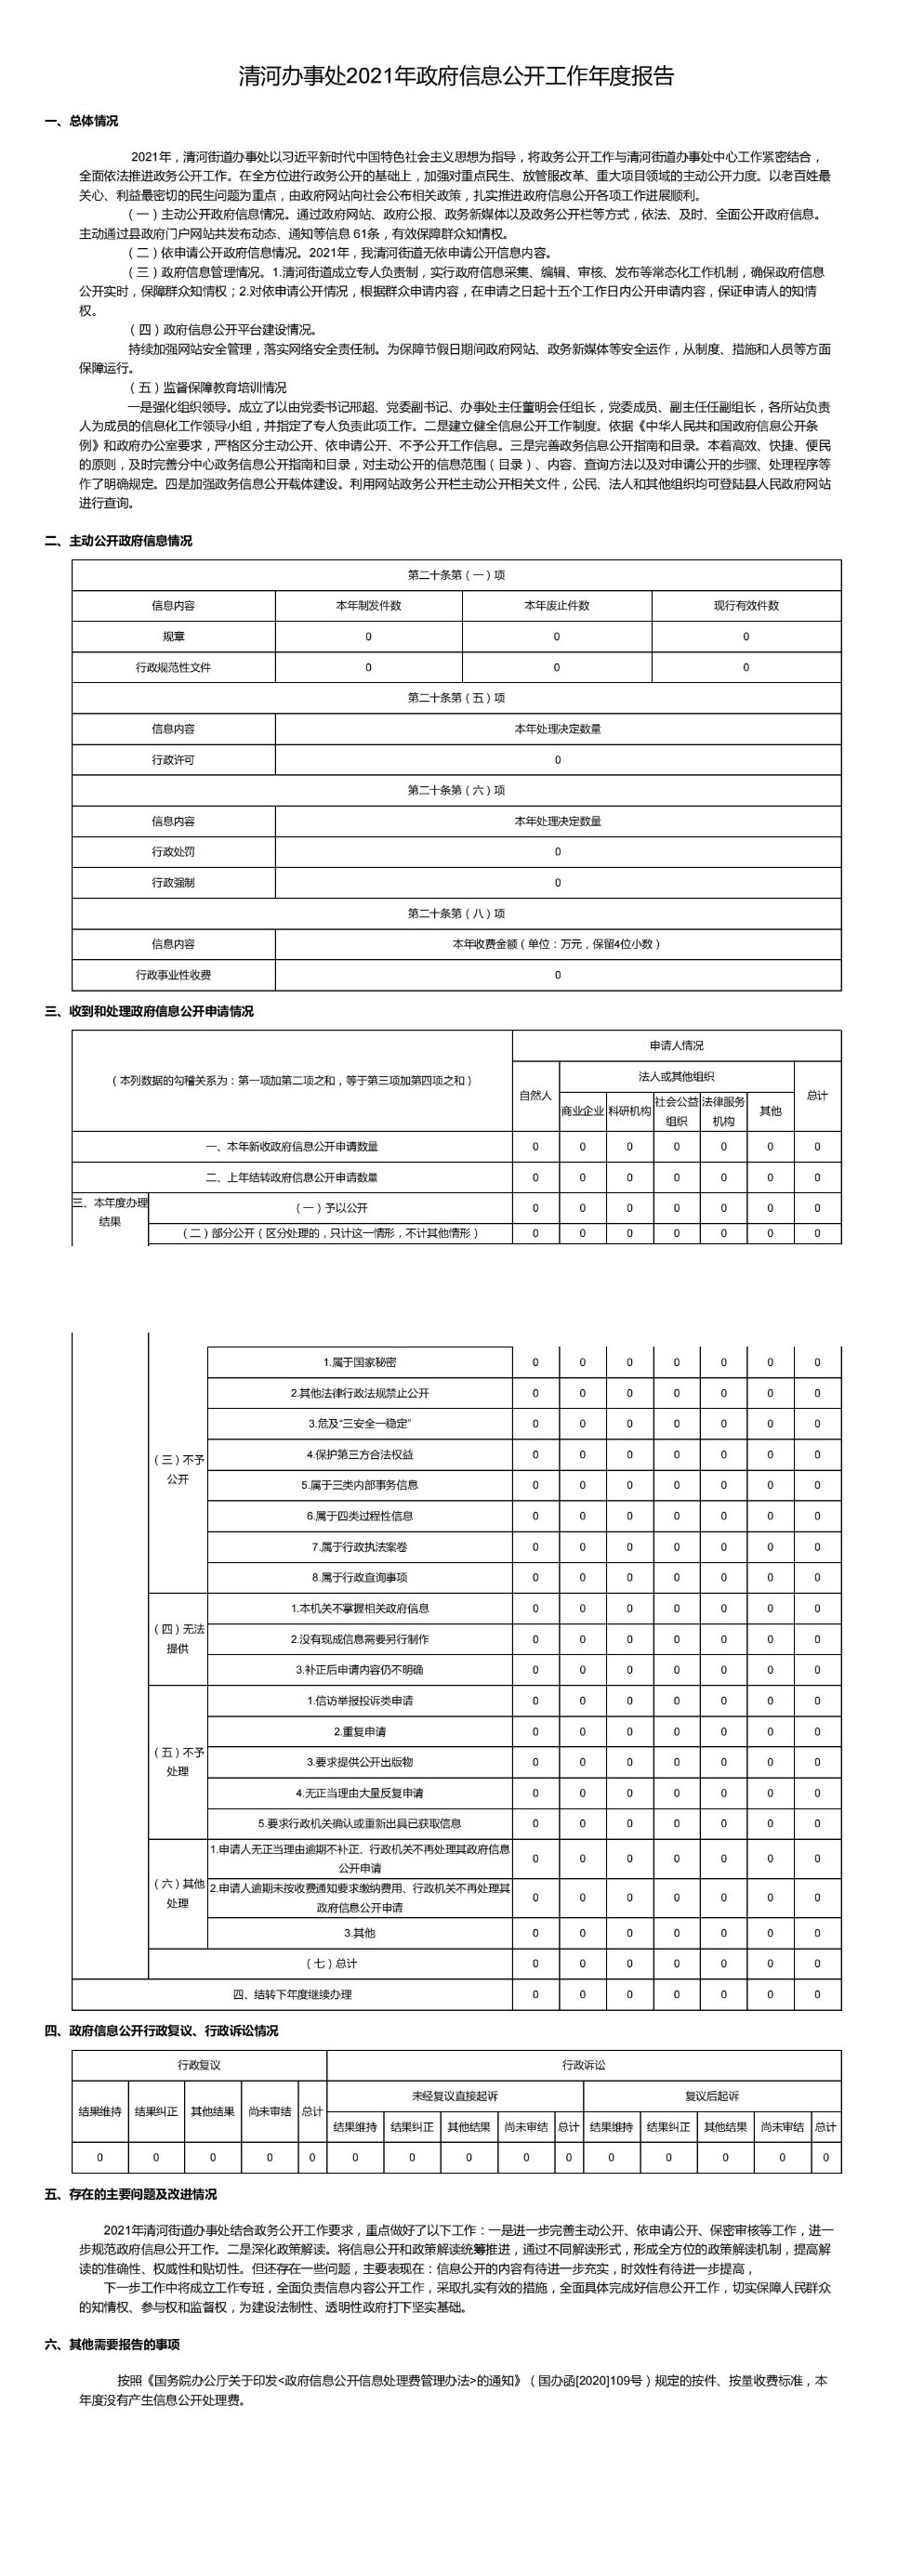 清河办事处2021年政府信息公开工作年度报告_00.jpg